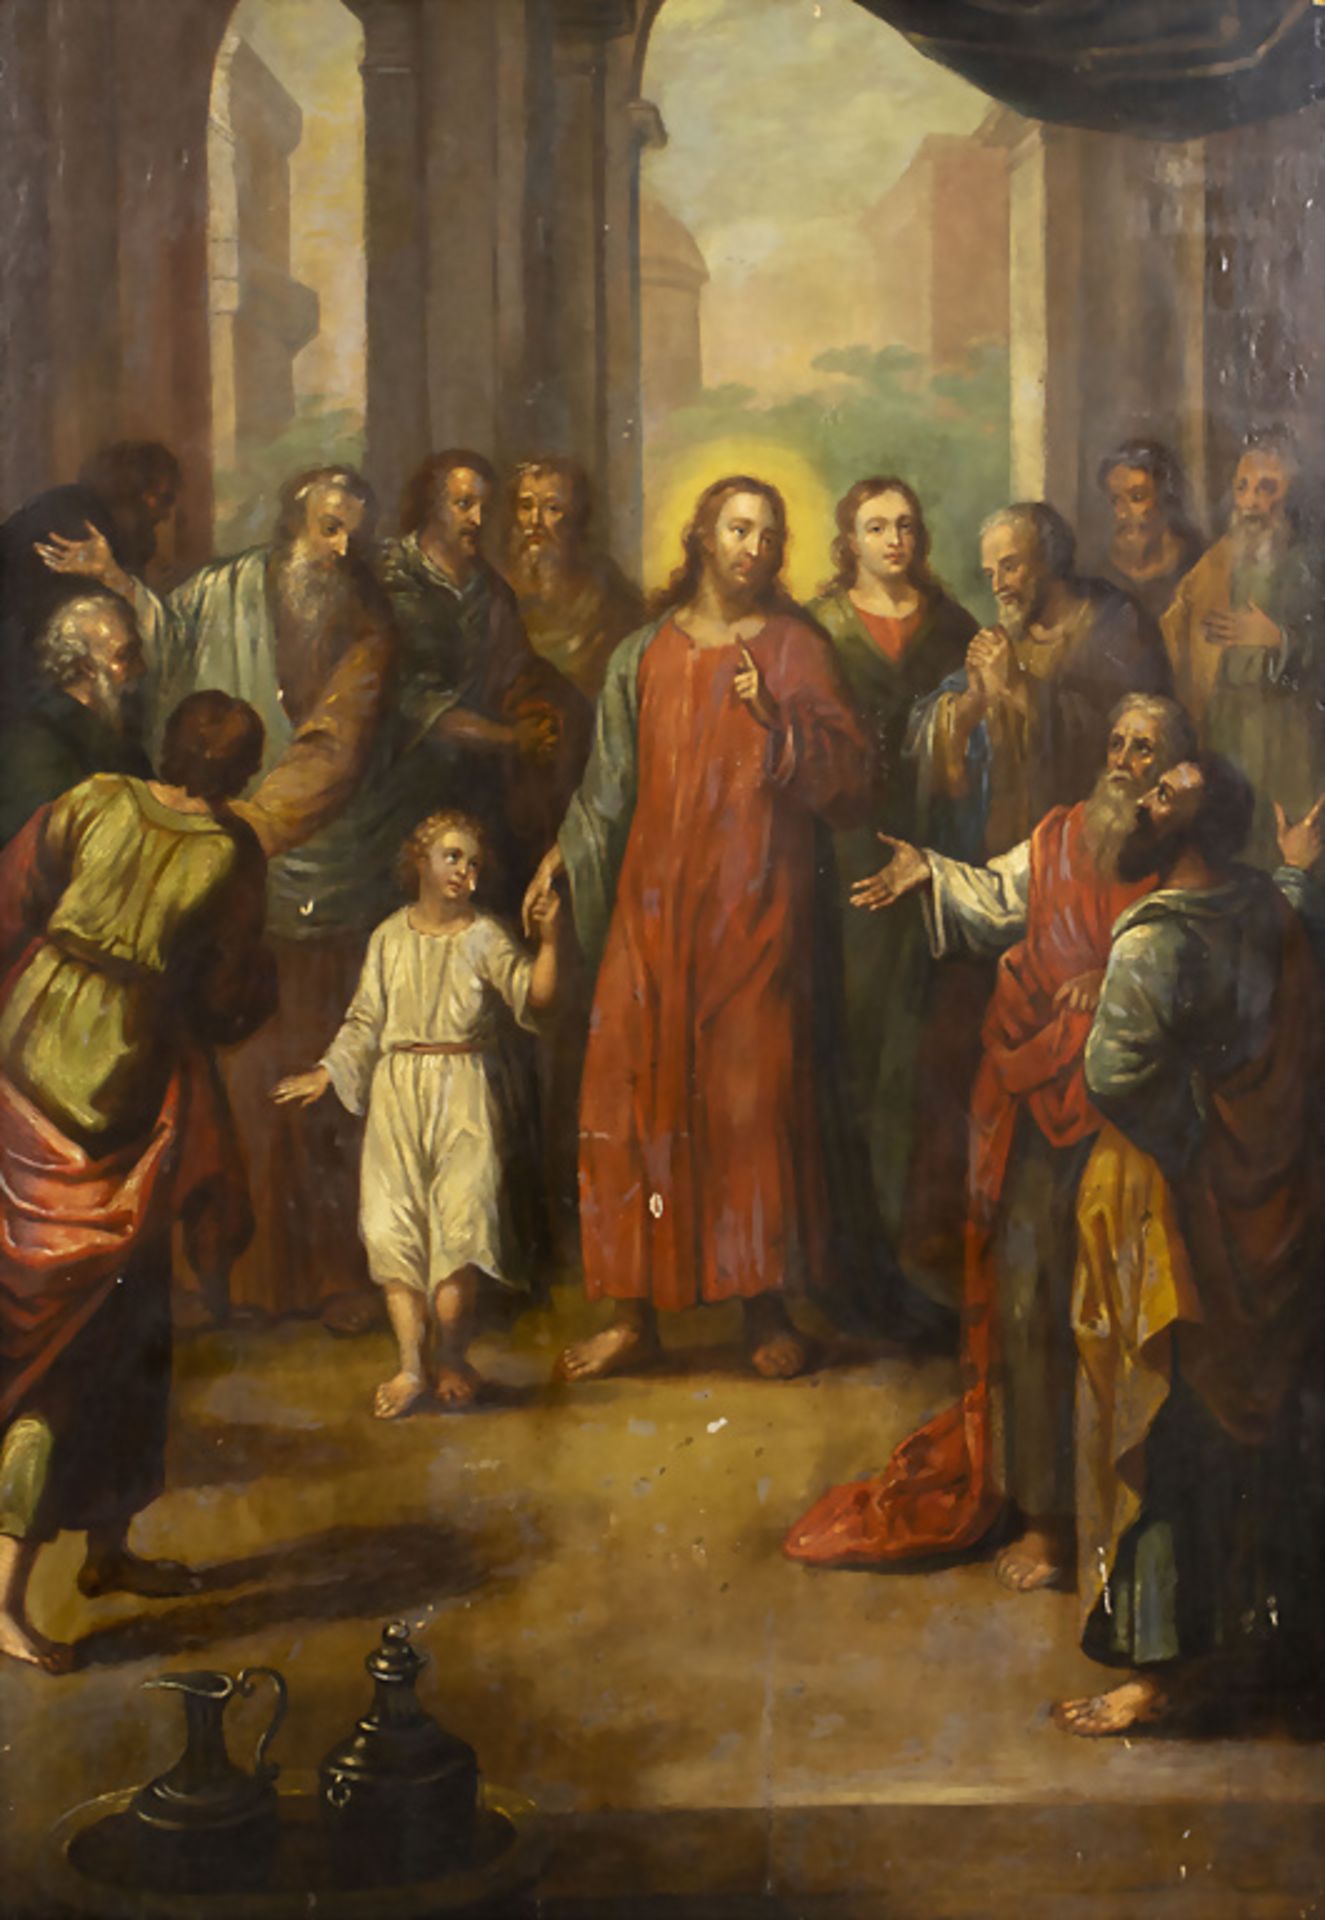 Unbekannter Künstler des 18. Jh., 'Jesus mit den 12 Aposteln' / 'Jesus and the 12 apostles'